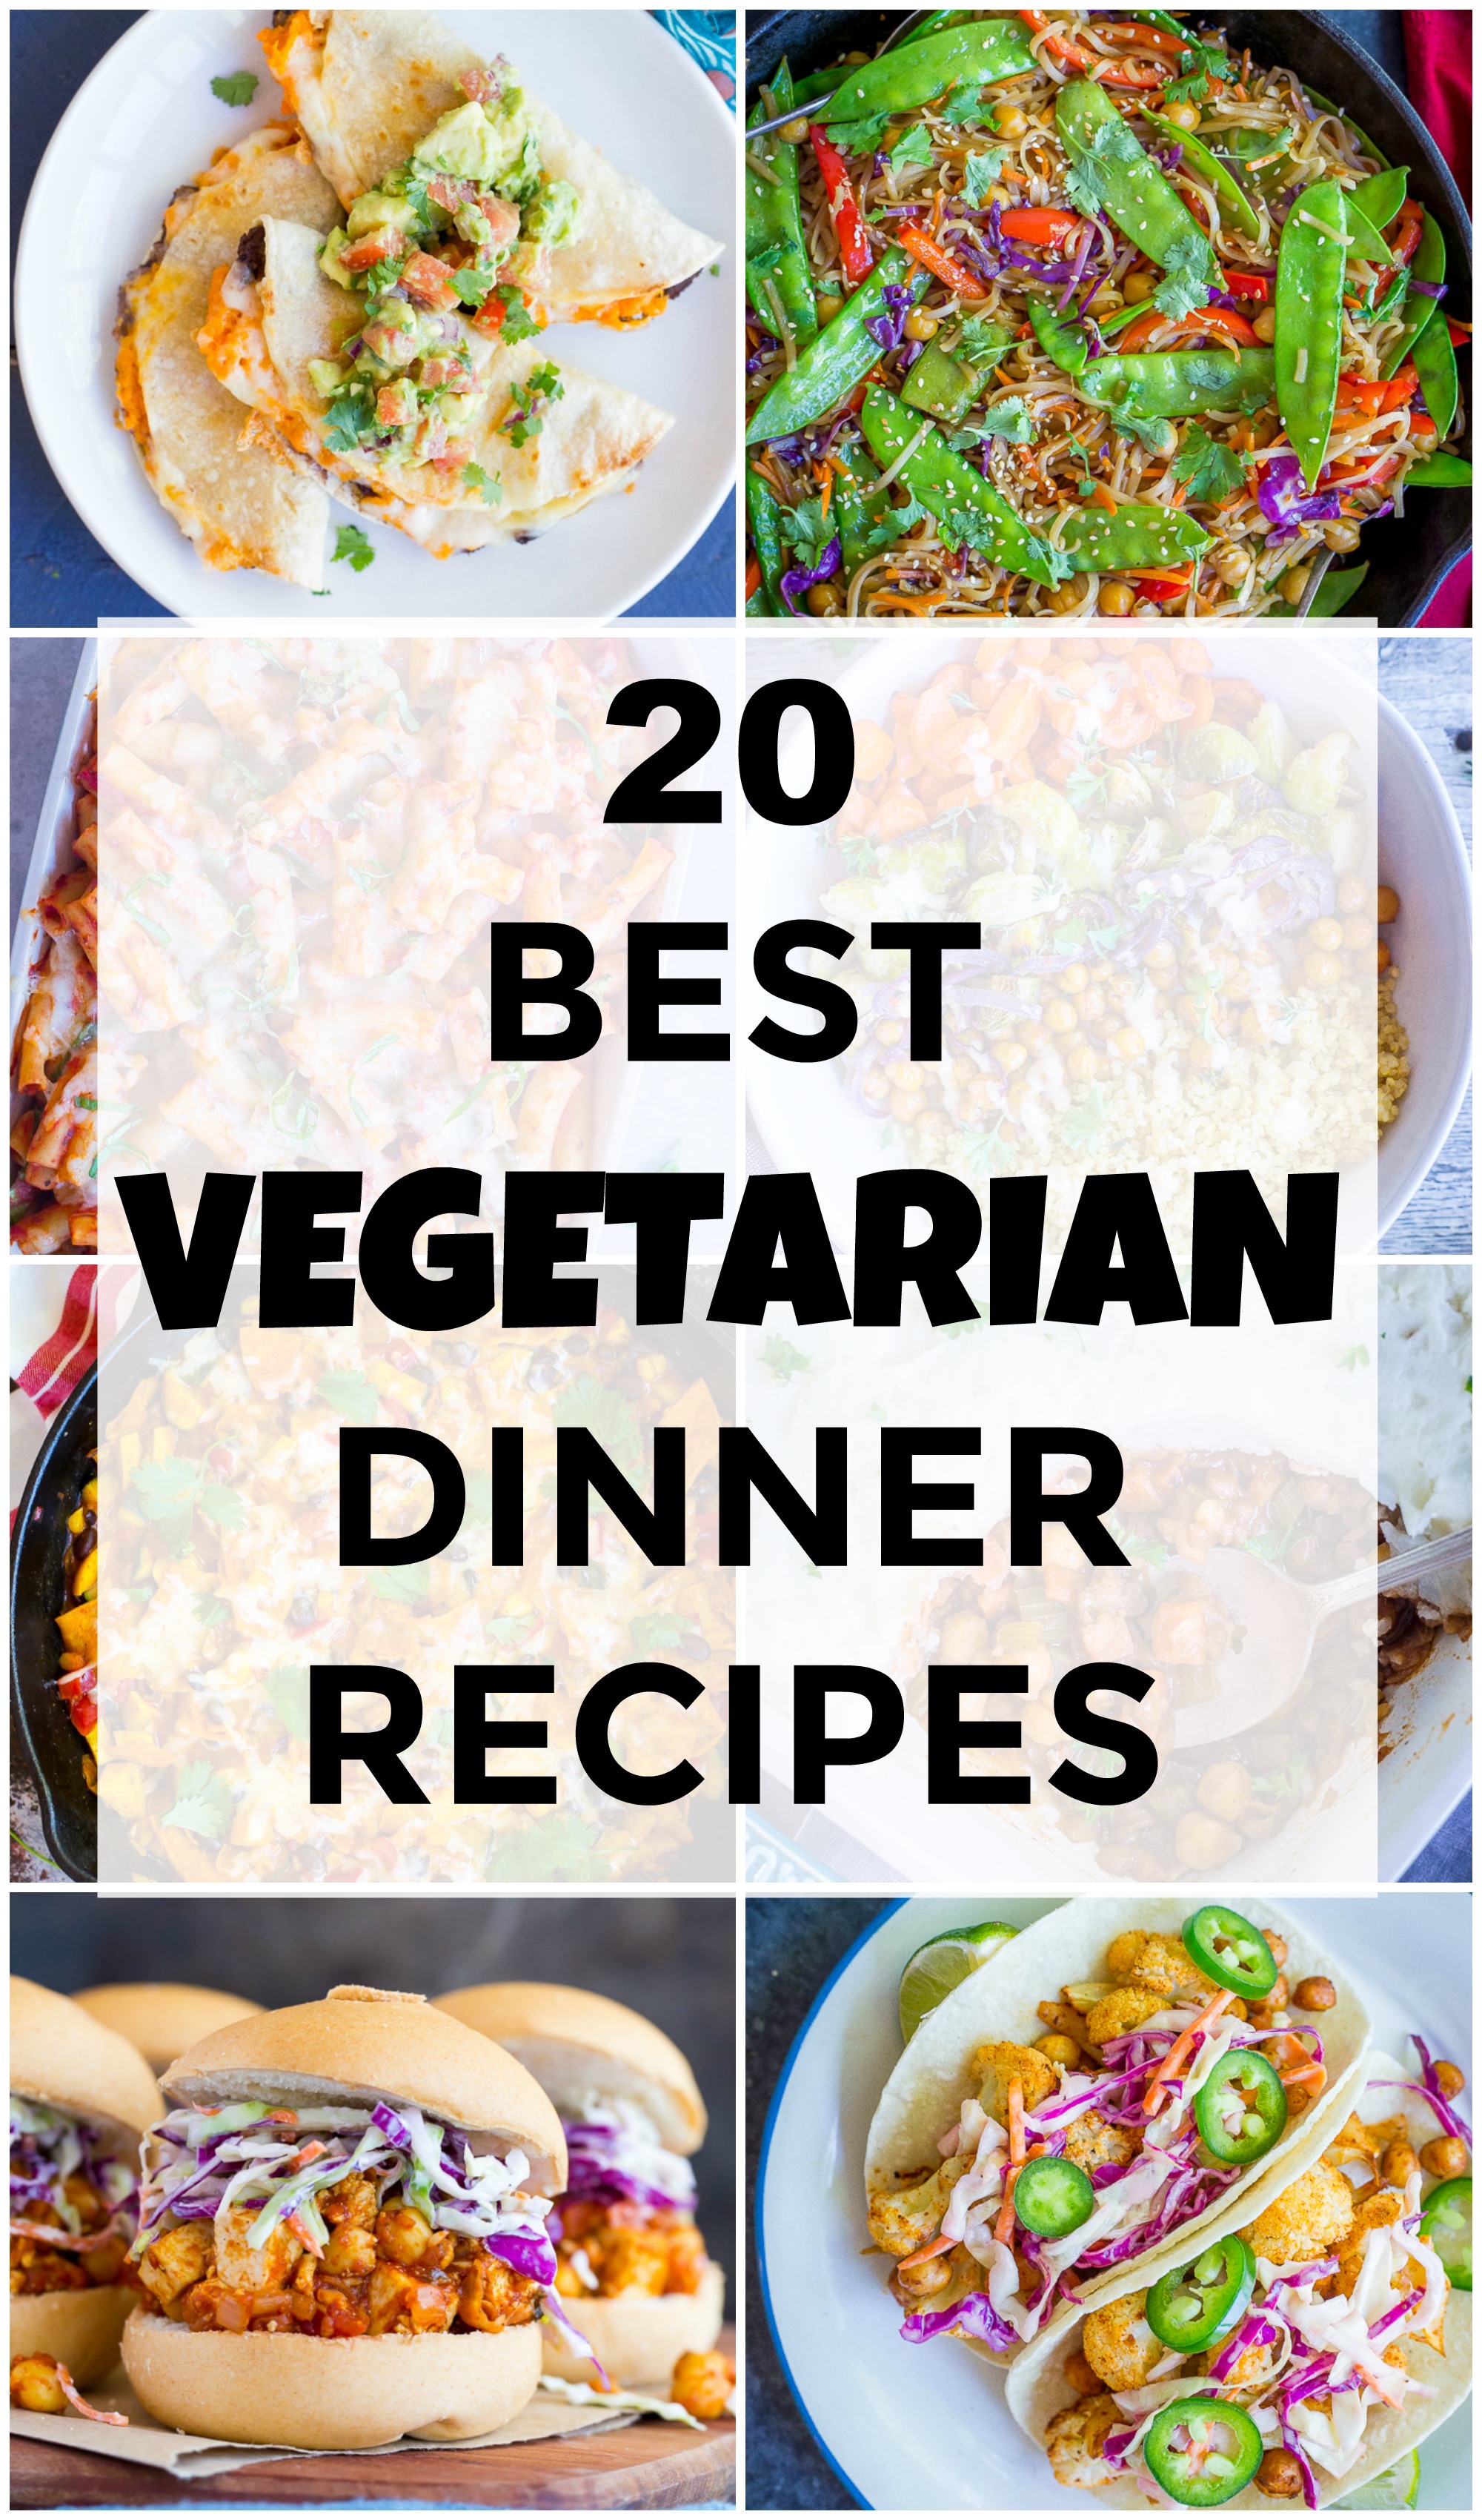 20 Best Vegetarian Dinner Recipes - She Likes Food